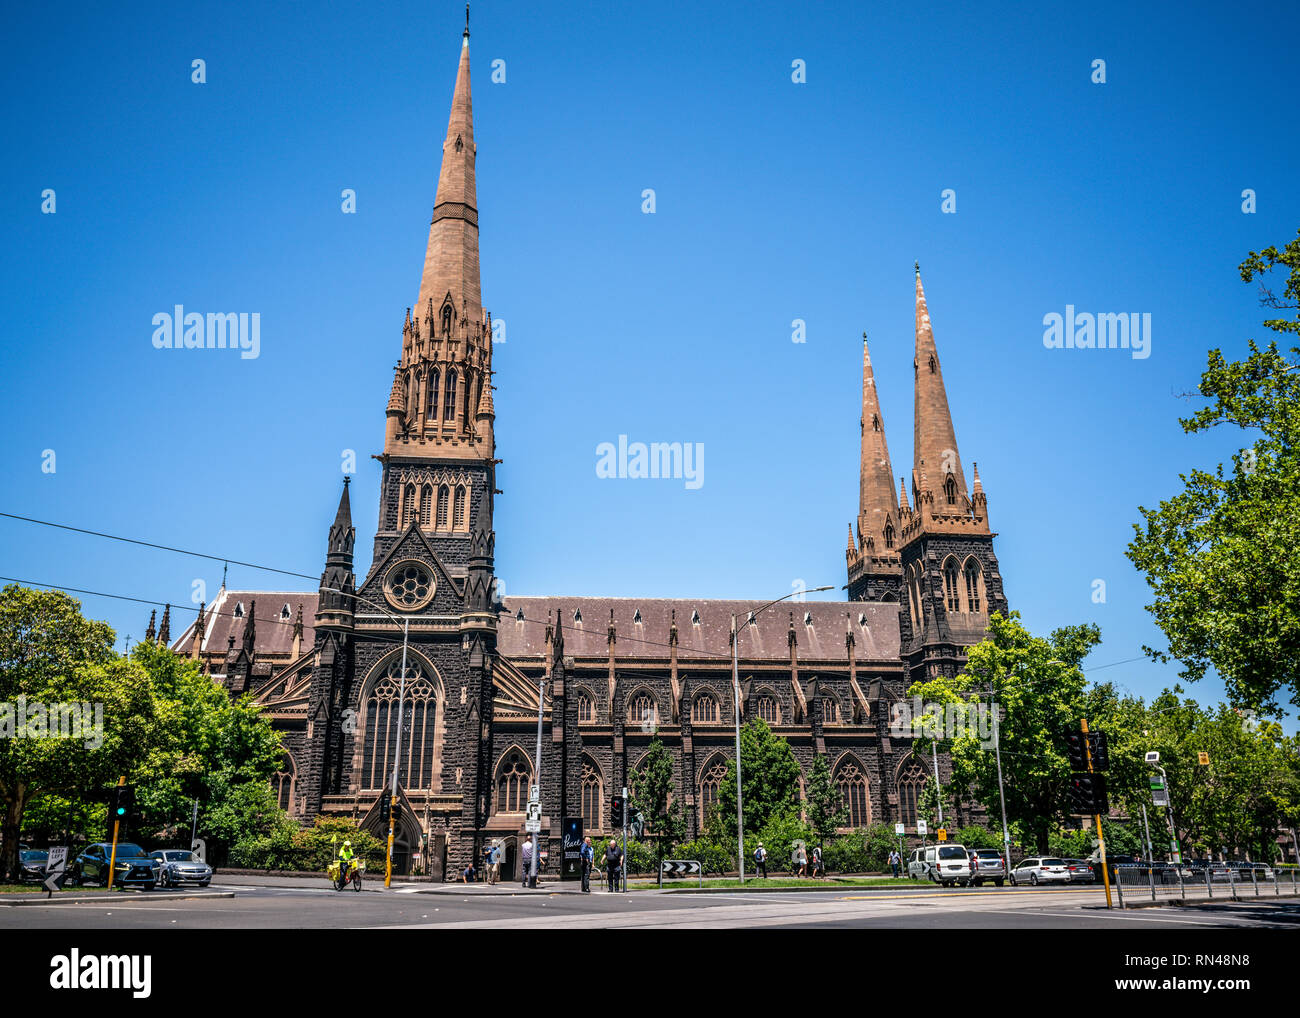 3 gennaio 2019, Melbourne Australia : street vista della Cattedrale di San Patrizio a una Cattedrale cattolica romana chiesa in Melbourne Victoria Australia Foto Stock